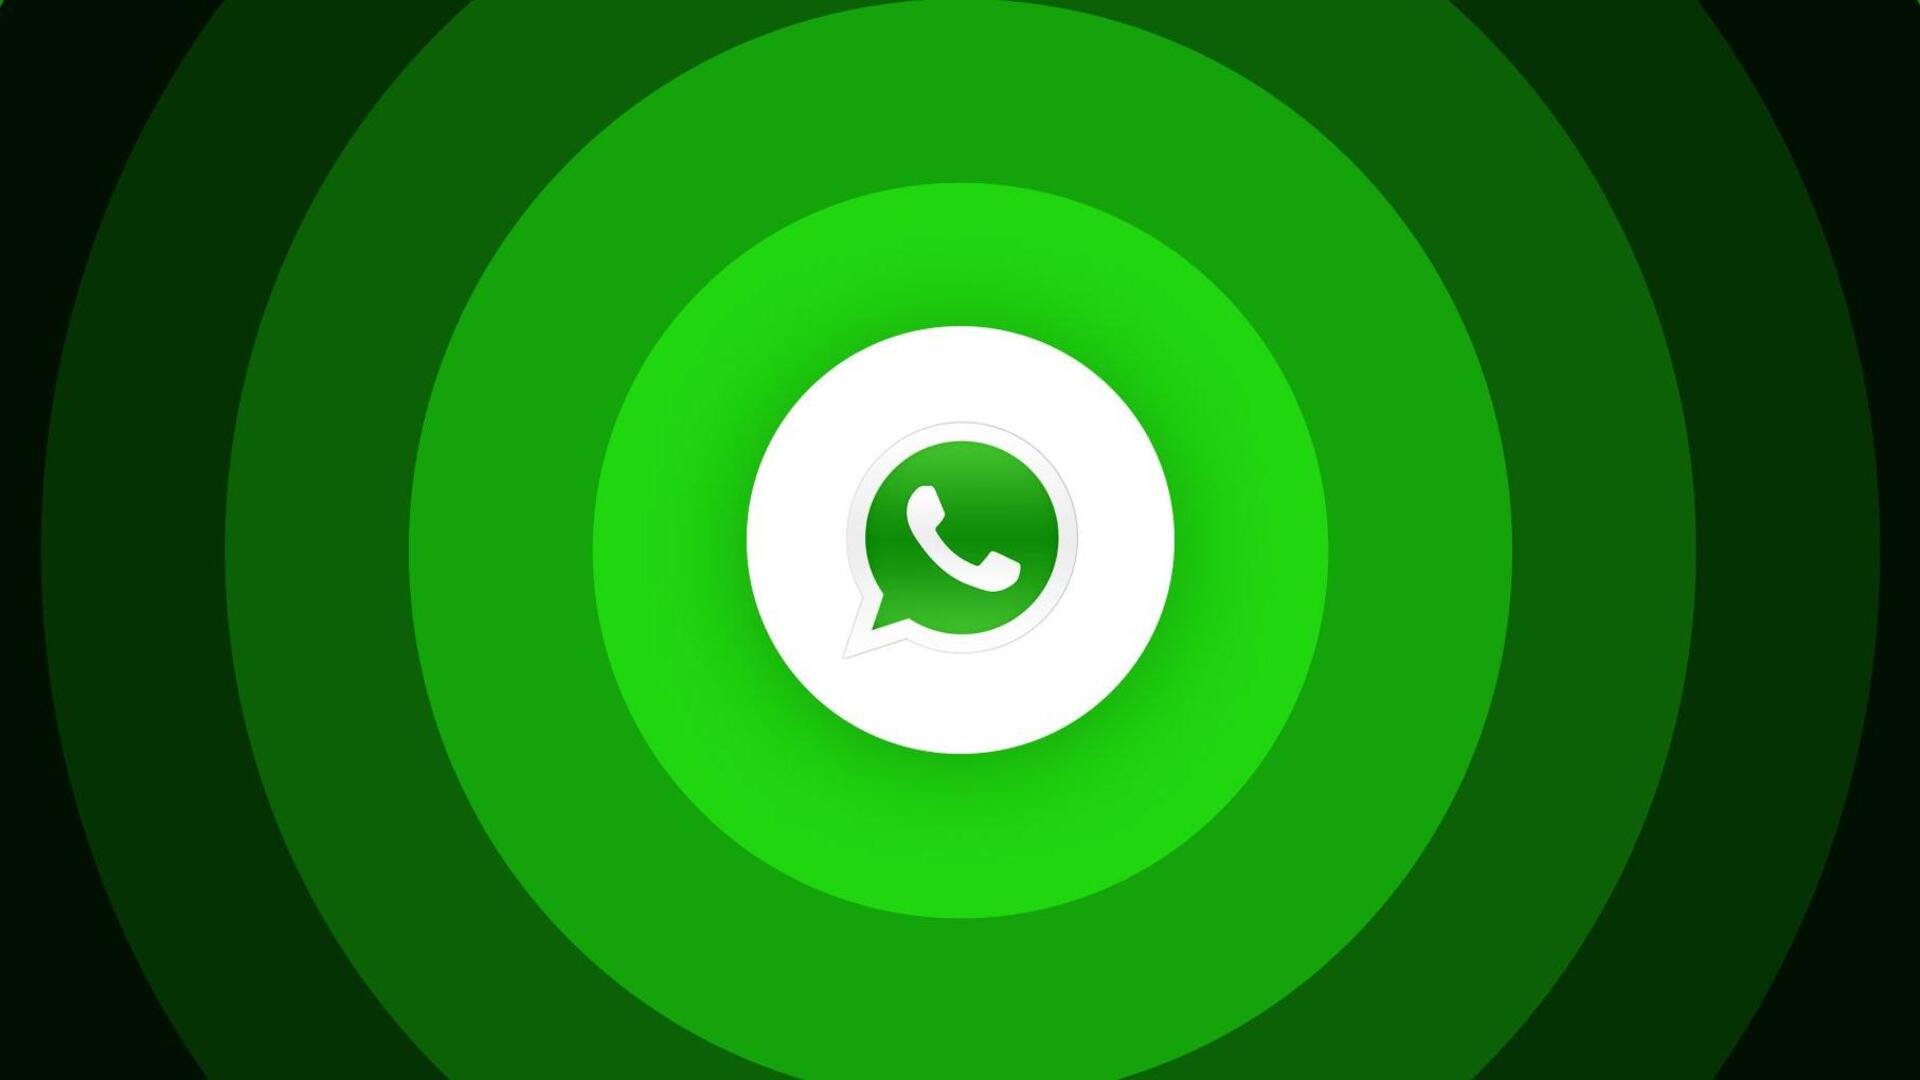 Whatsapp logo, Whatsapp icon logo vector, Free Vector 19490732 Vector Art  at Vecteezy